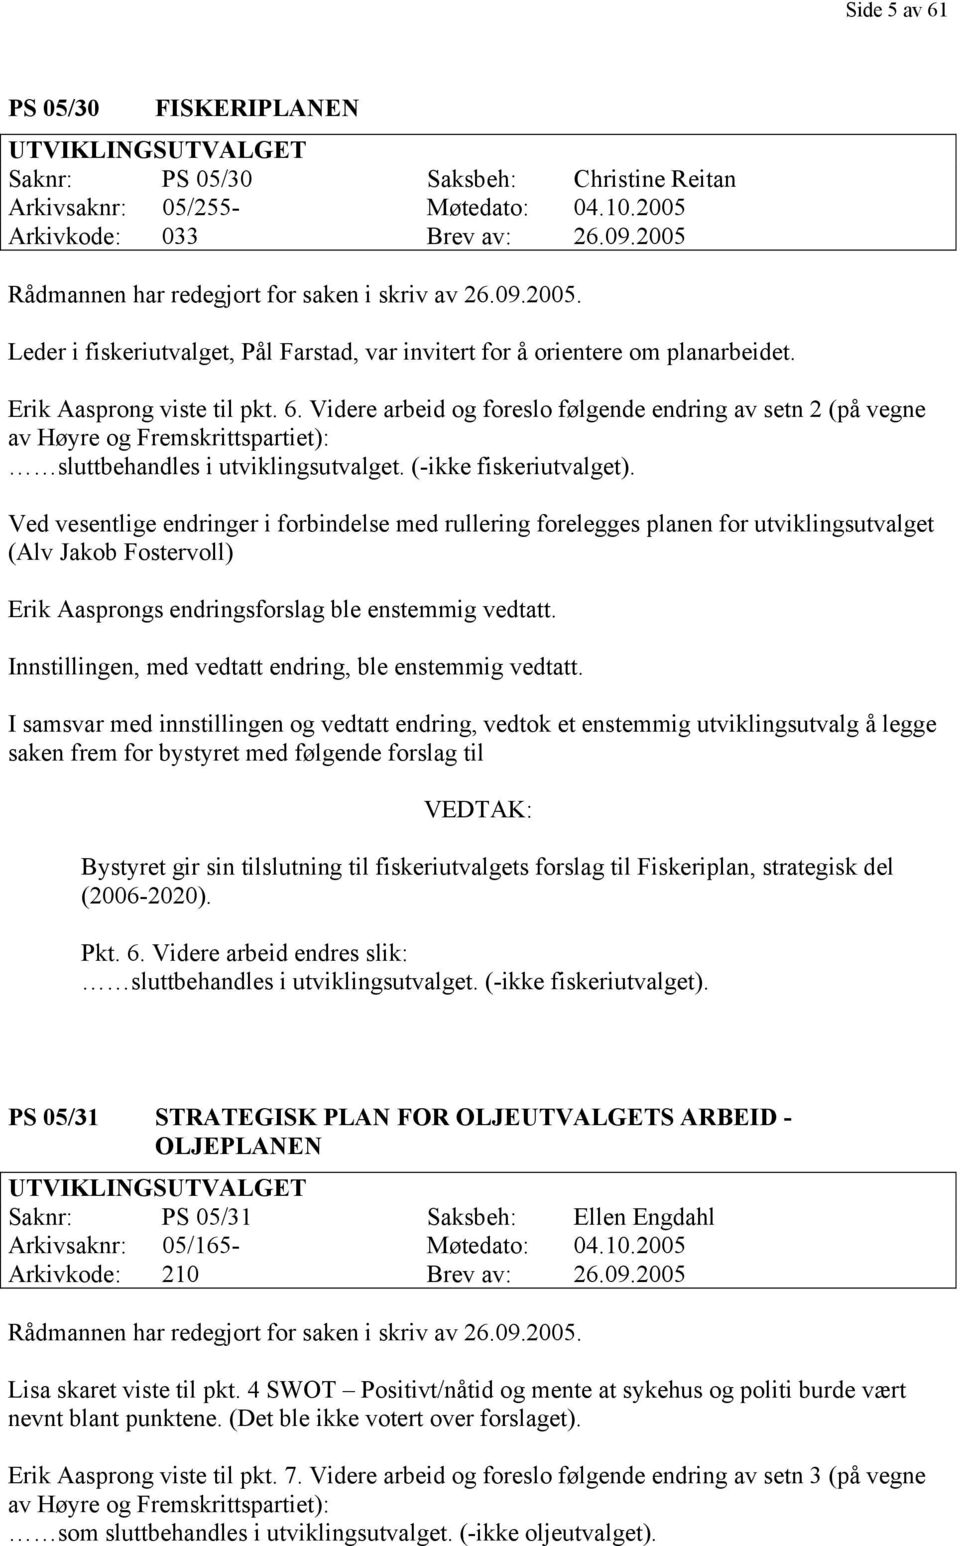 Videre arbeid og foreslo følgende endring av setn 2 (på vegne av Høyre og Fremskrittspartiet): sluttbehandles i utviklingsutvalget. (-ikke fiskeriutvalget).